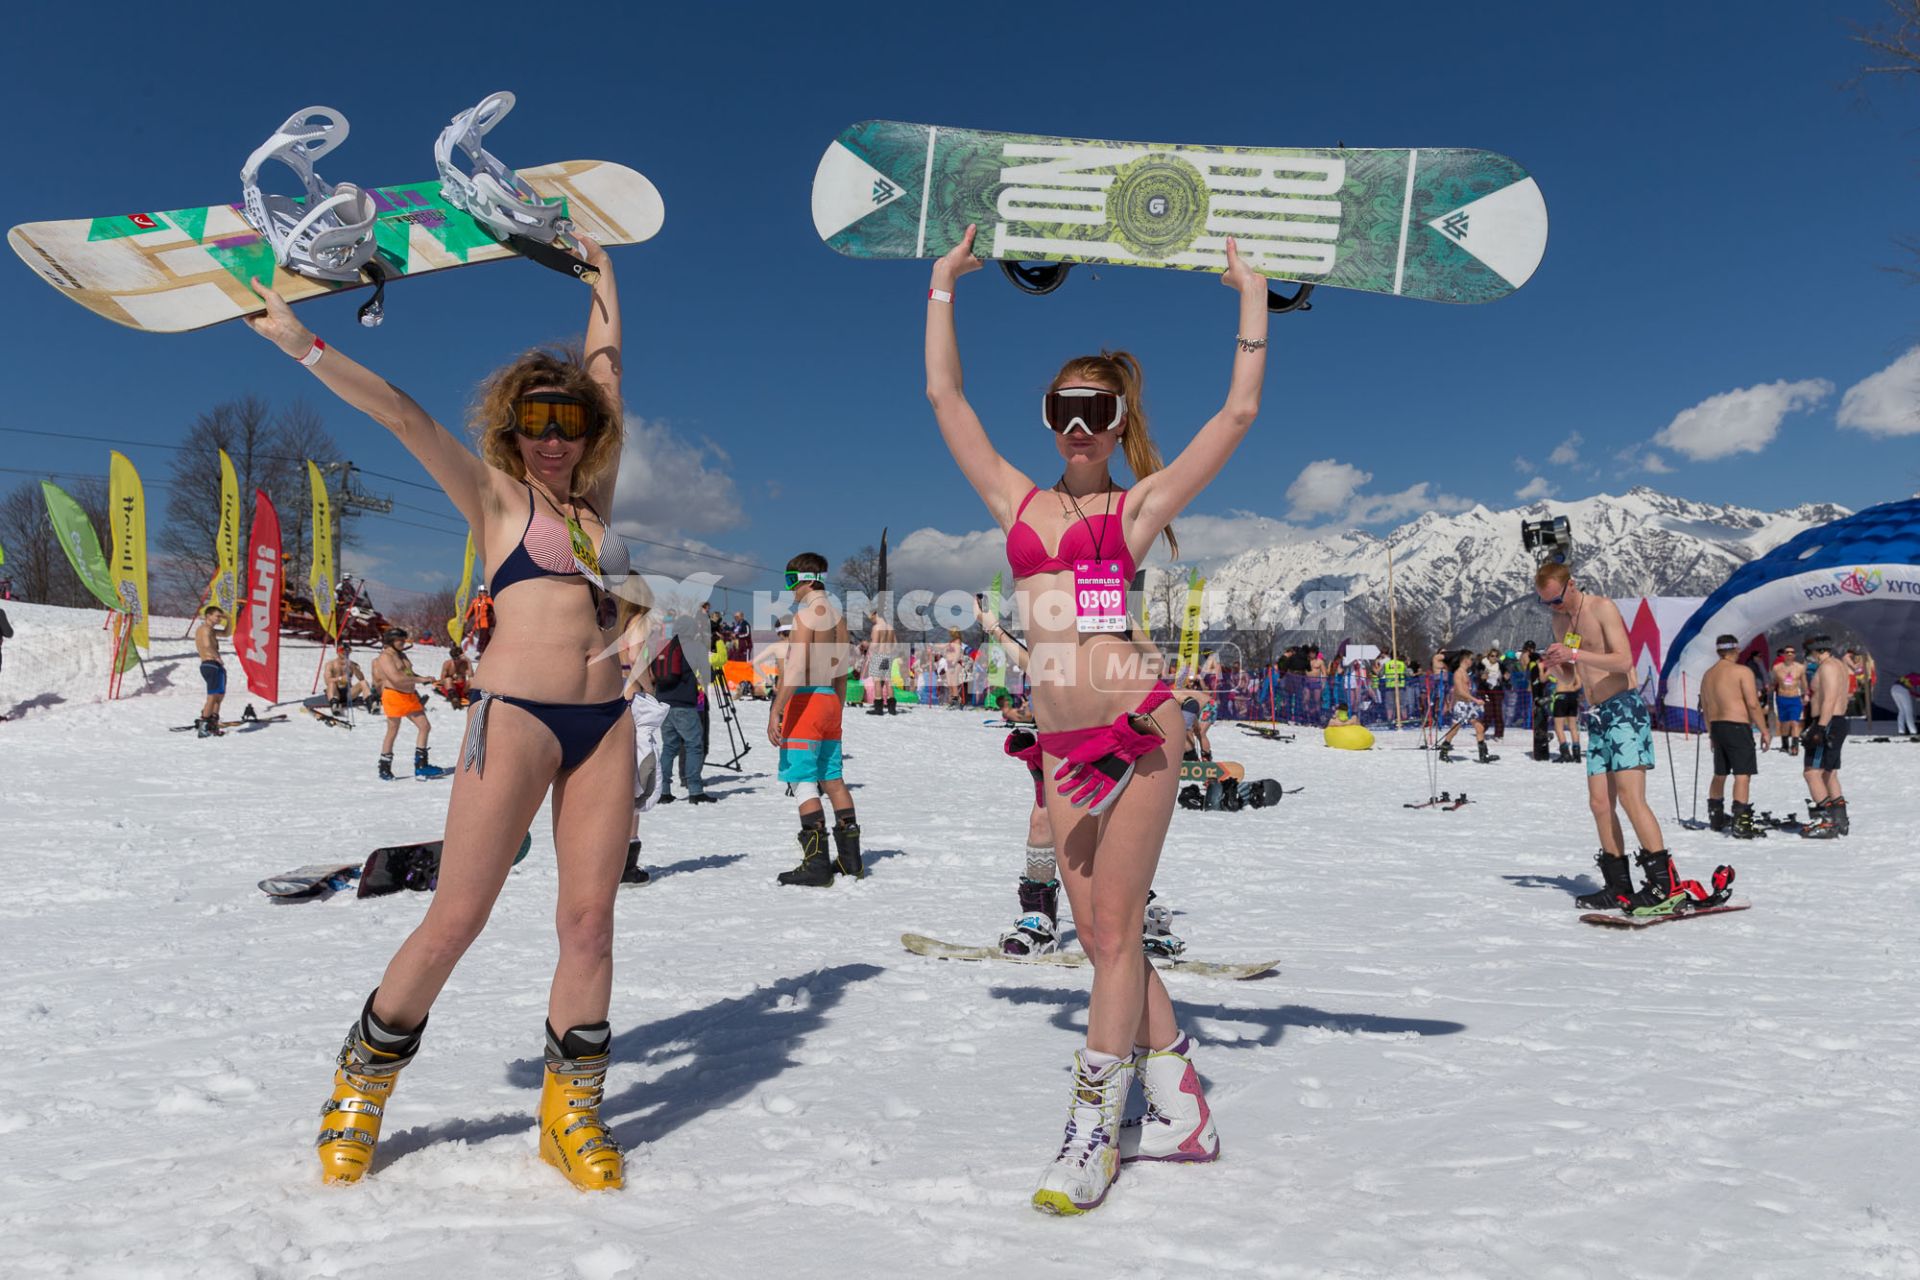 Сочи. Участницы высокогорного карнавала BoogelWoogel во время массового спуска с горы в купальных костюмах на горнолыжном курорте `Роза Хутор` в Красной поляне.